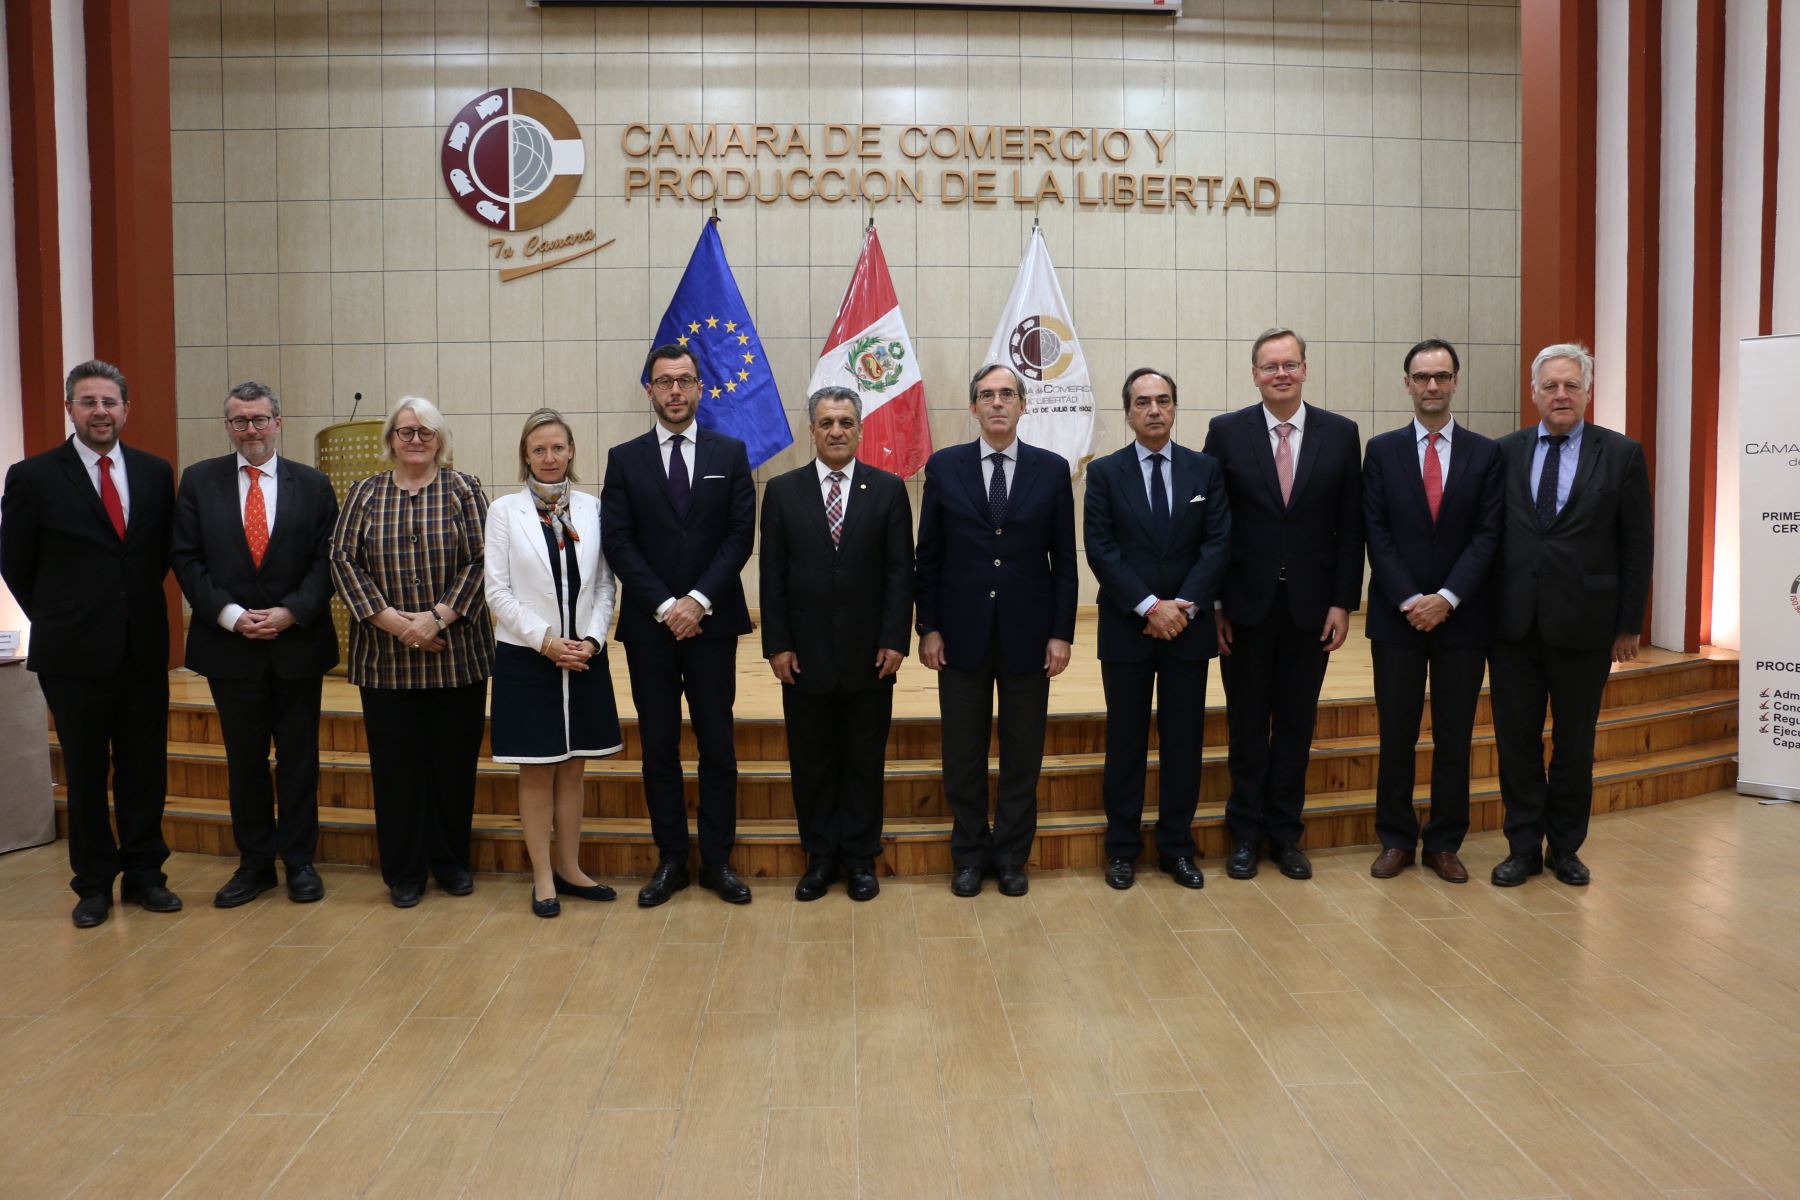 Embajadores de la Unión Europea cumplieron una visita protocolar en Trujillo, La Libertad. ANDINA